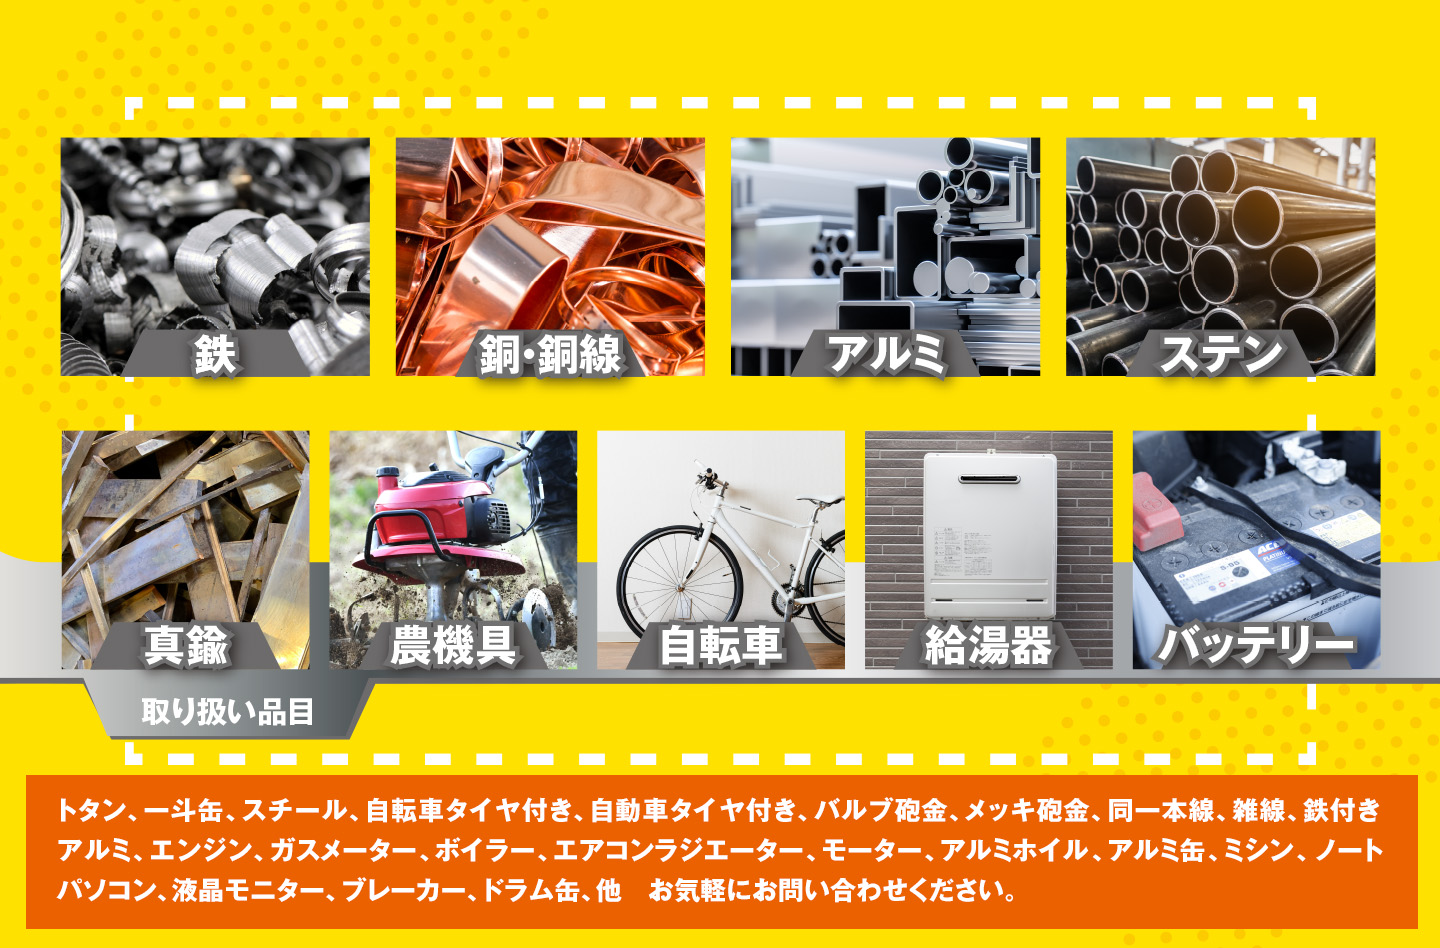 金属・スクラップ買取のメタル急便が 加美町にオープン
一般家庭のスクラップやリサイクル品の買取も行っております。